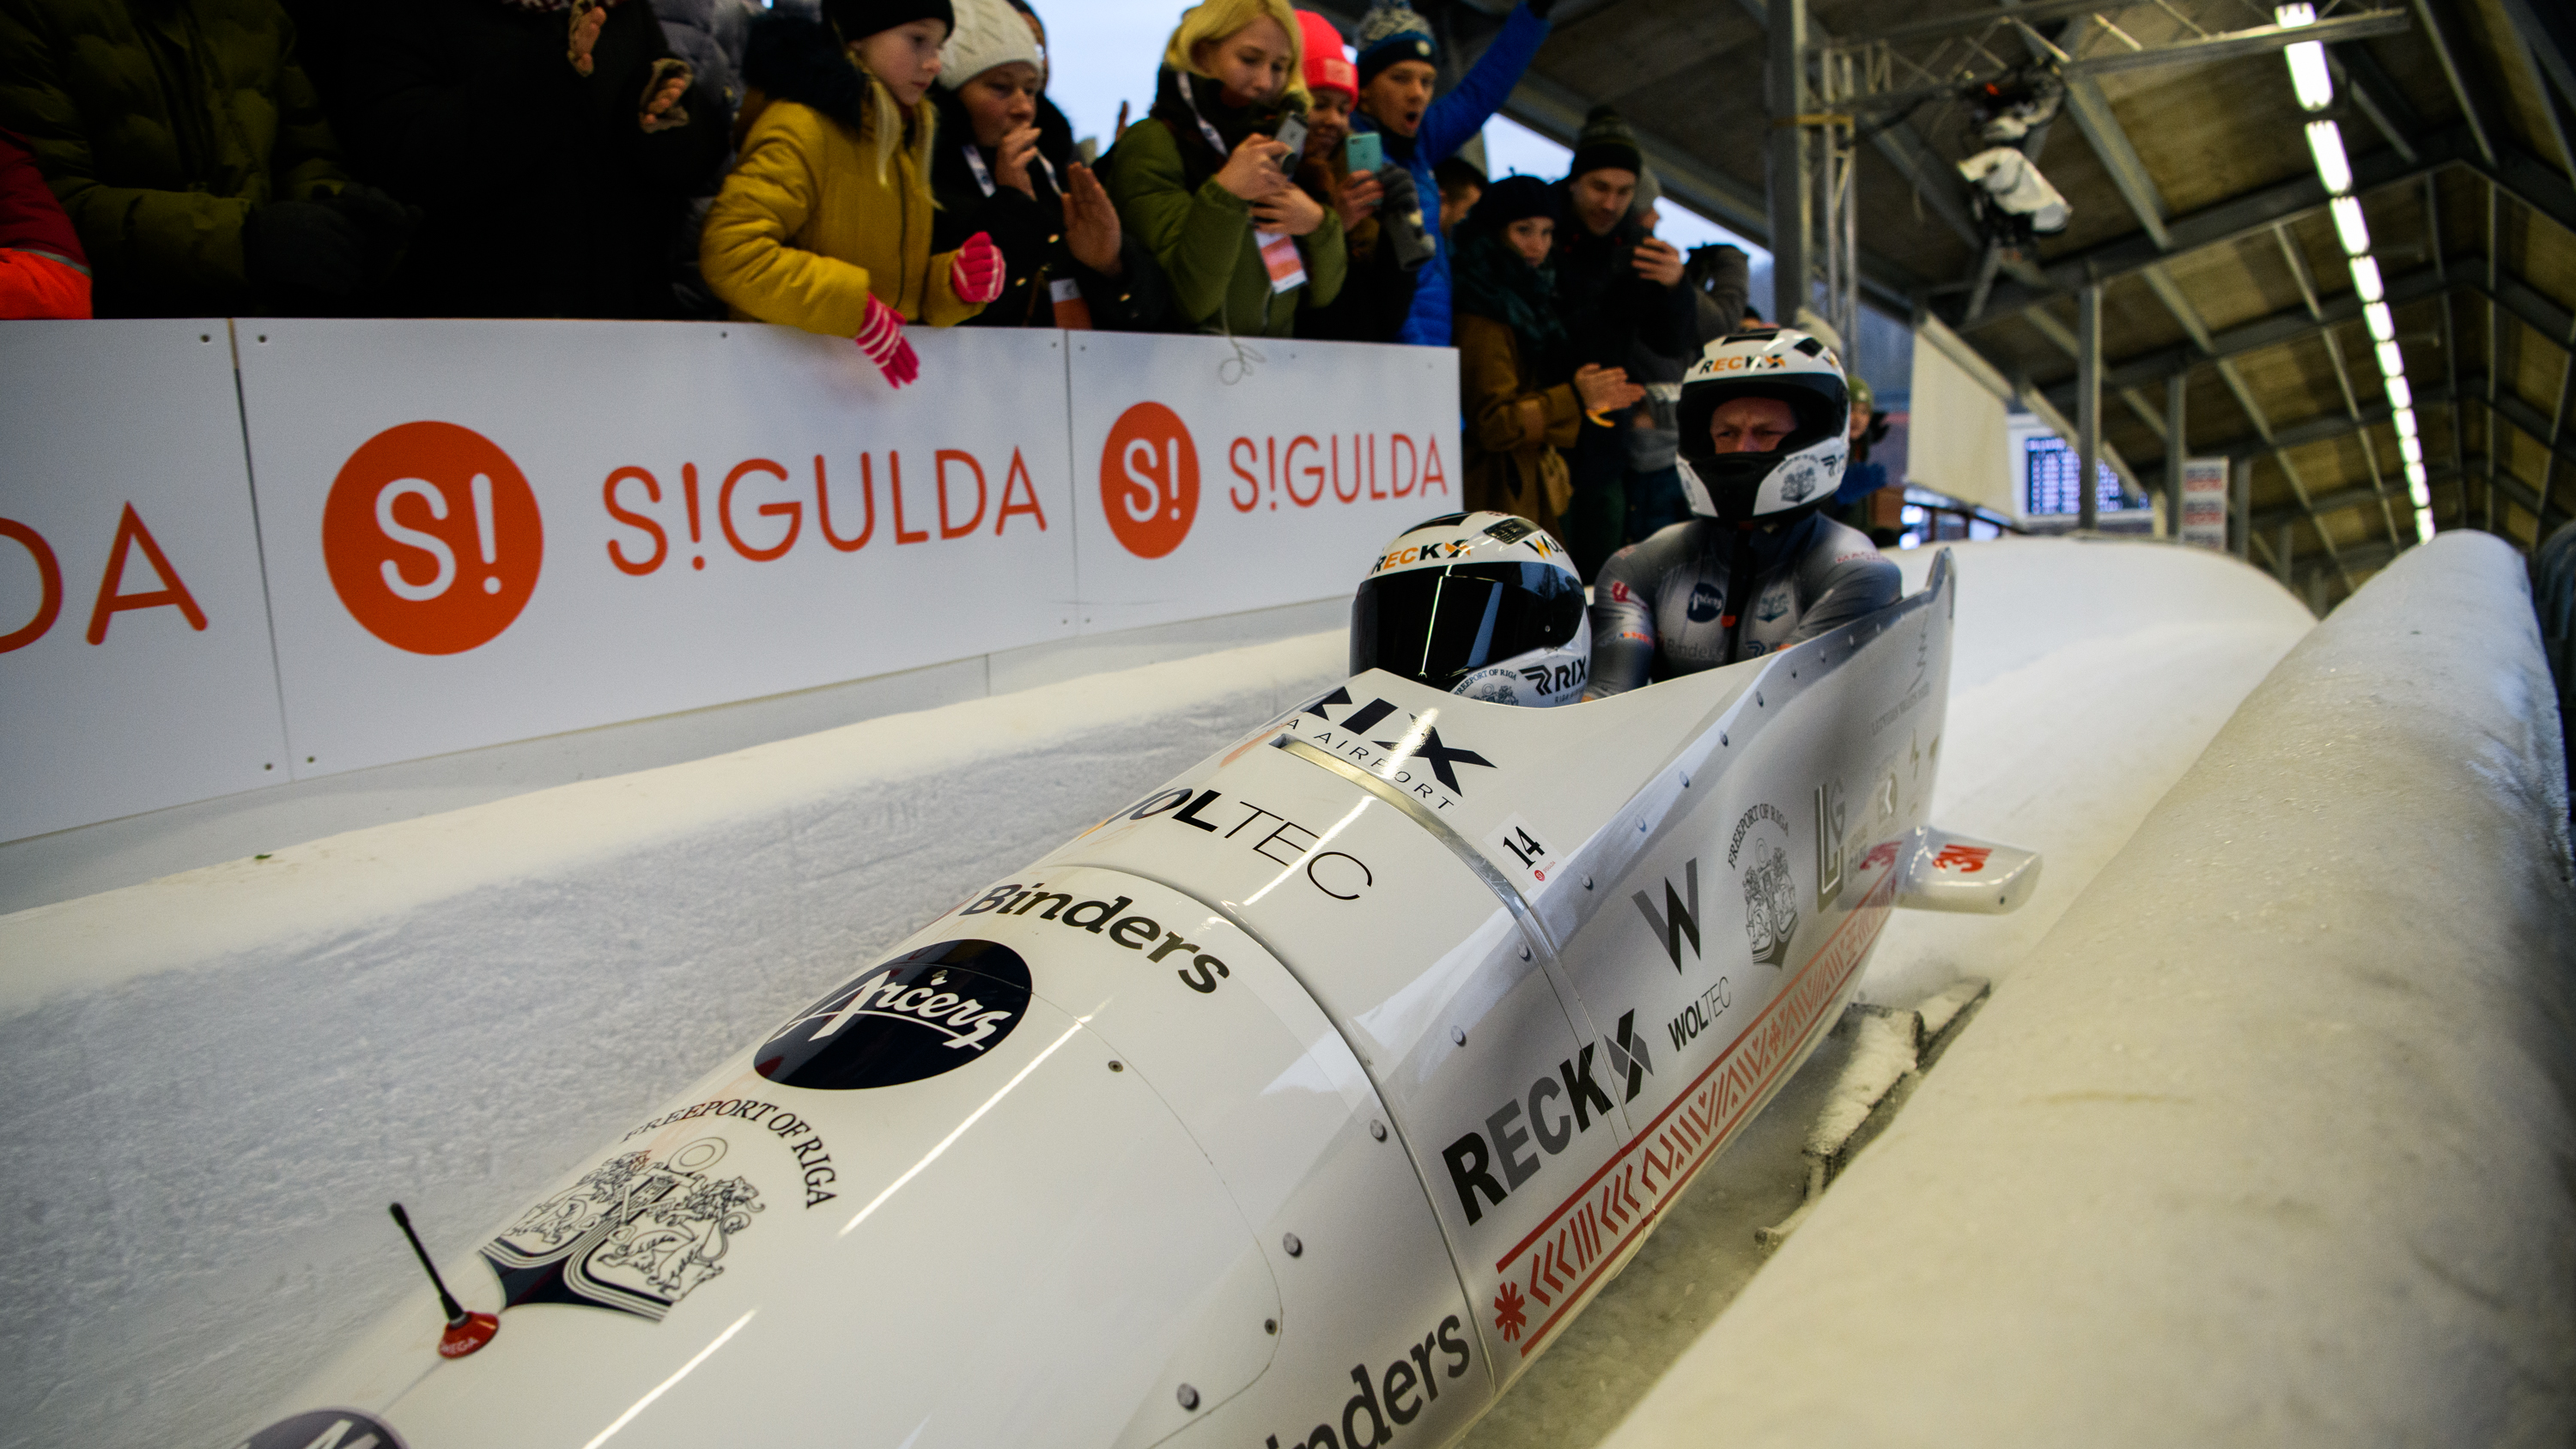 Kā bobsleja un skeletona elite dzīvos Siguldas "burbulī"?